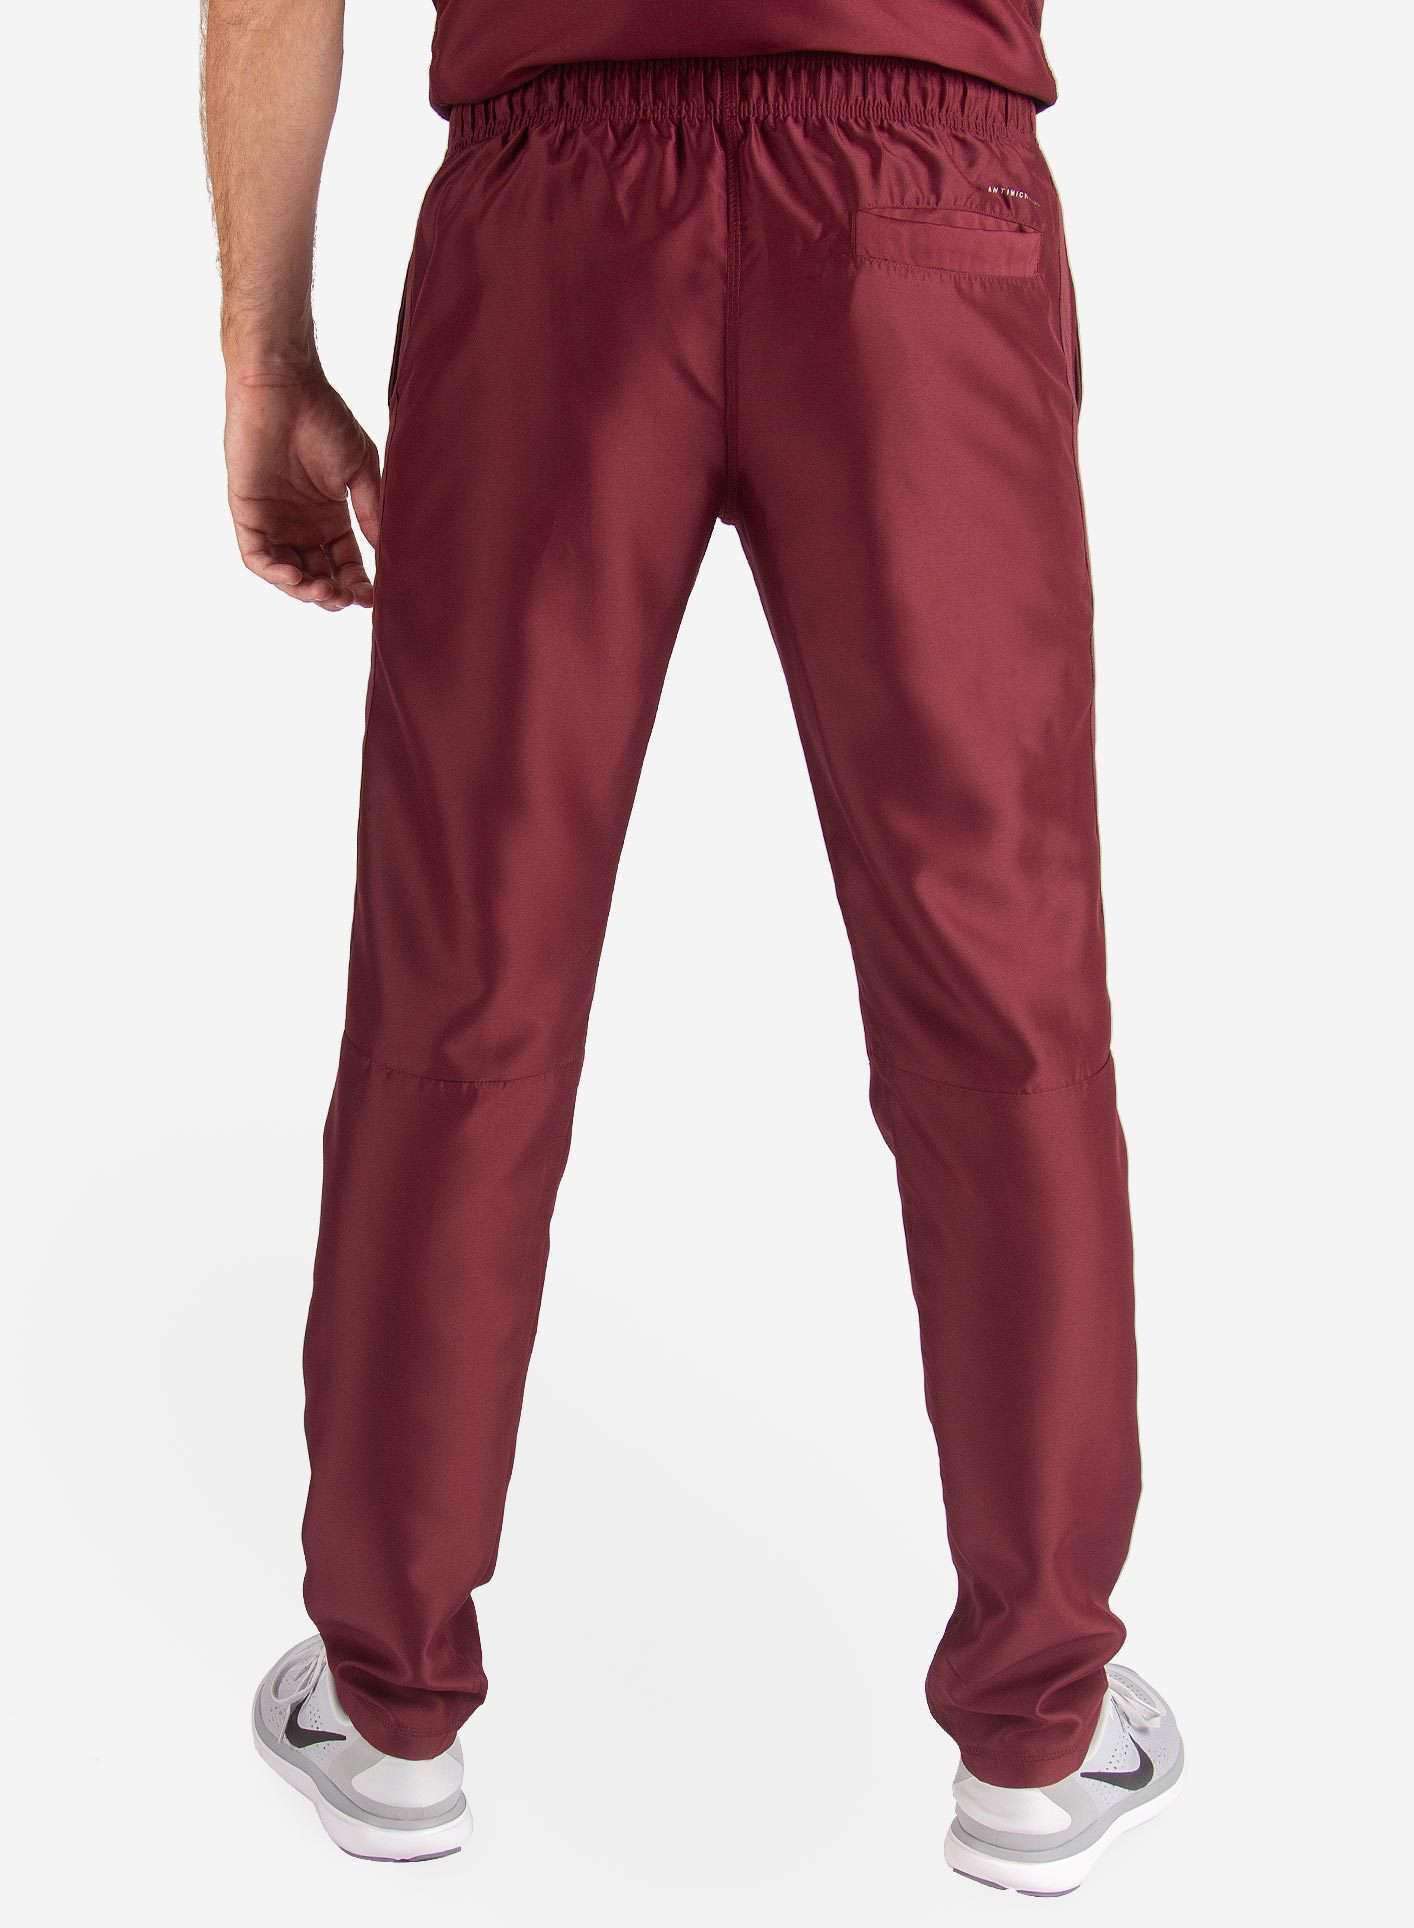 Men's Slim Fit Scrub Pants in Bold burgundy